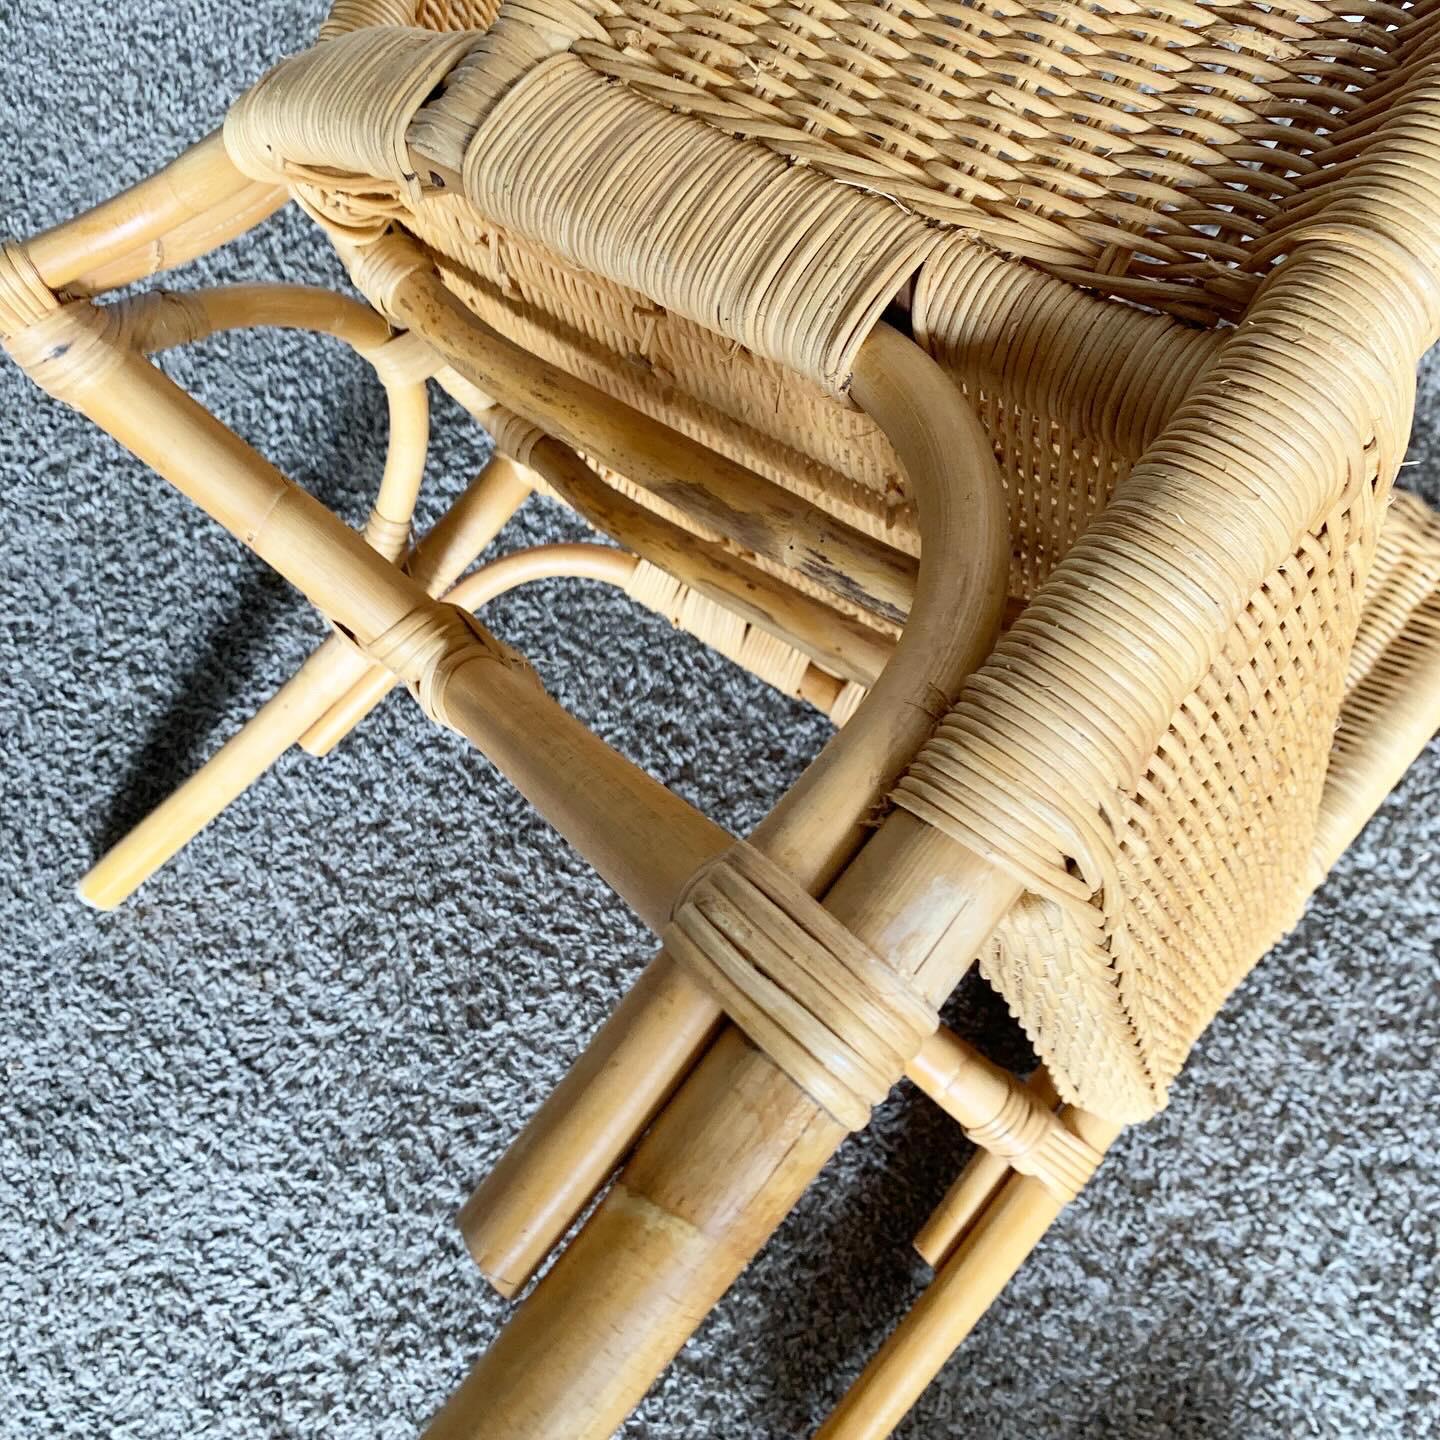 Lässige Eleganz mit den Wicker Rattan Dining Arm Chairs, einem Set aus vier Stühlen, die natürliche Texturen in Ihren Essbereich bringen und für ein von der Küste inspiriertes Erlebnis sorgen.
Geringfügige Abnutzung der Oberfläche an den Rändern,